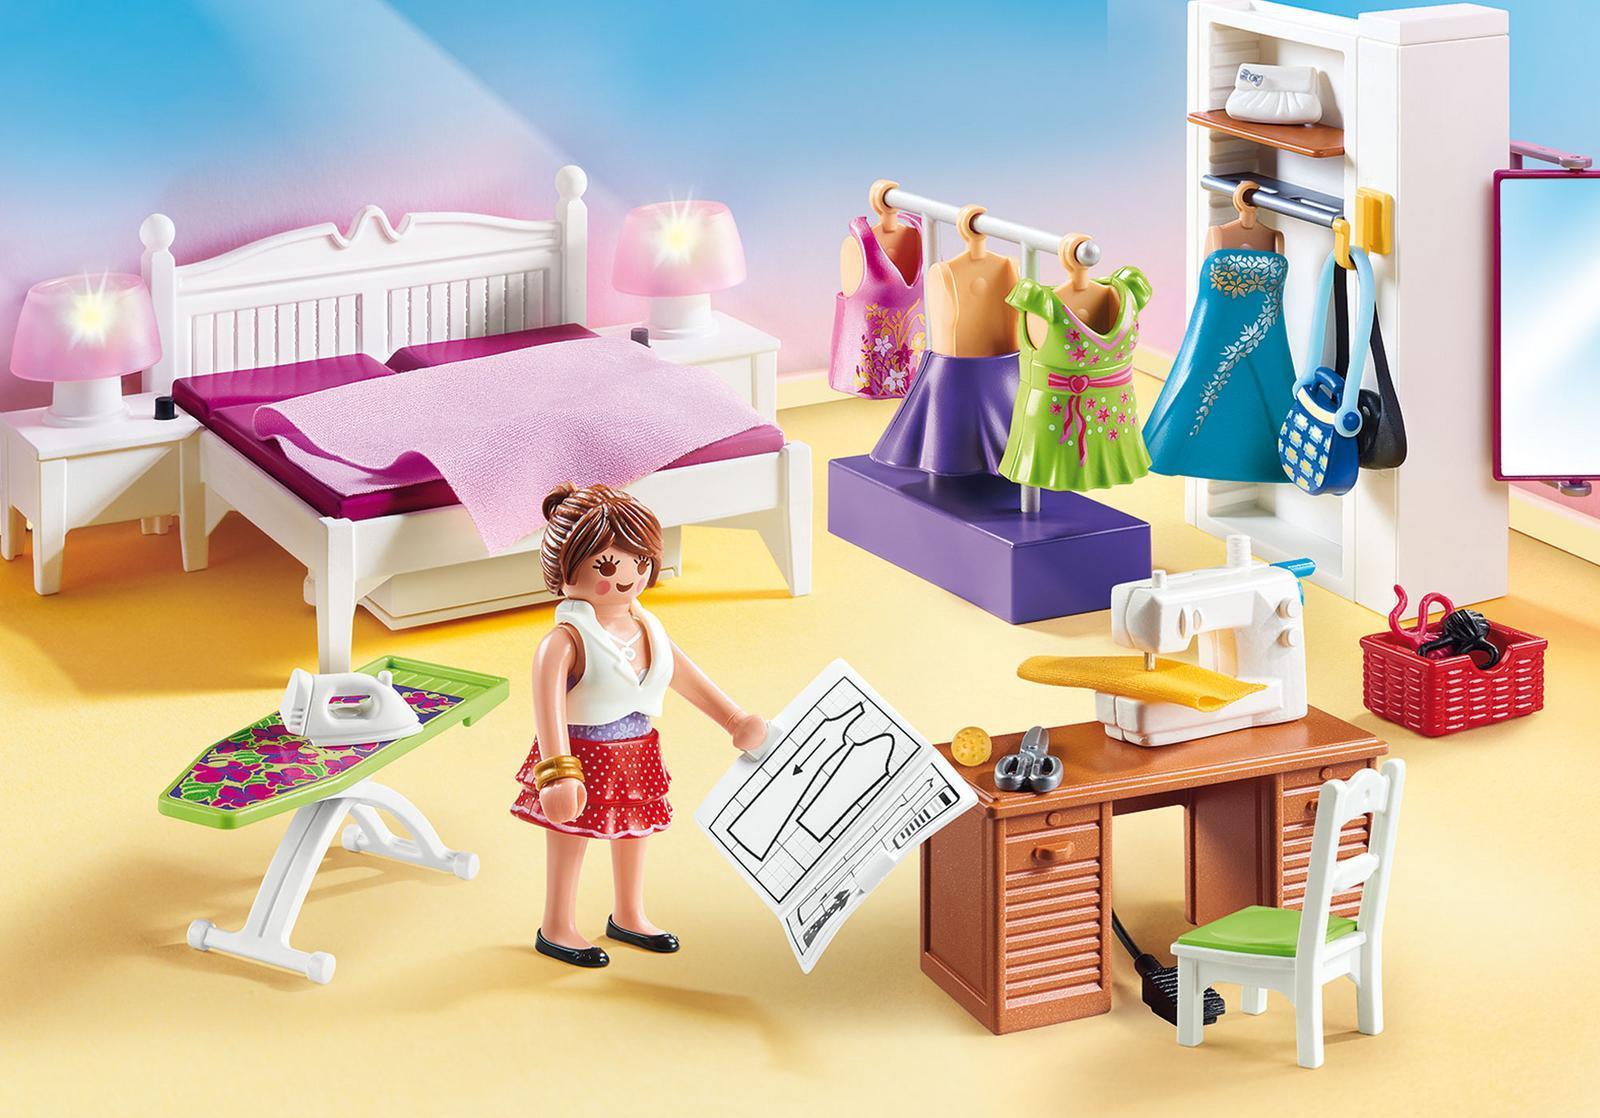 Playmobil Dollhouse 70208 Spielzeug-Set (70208)